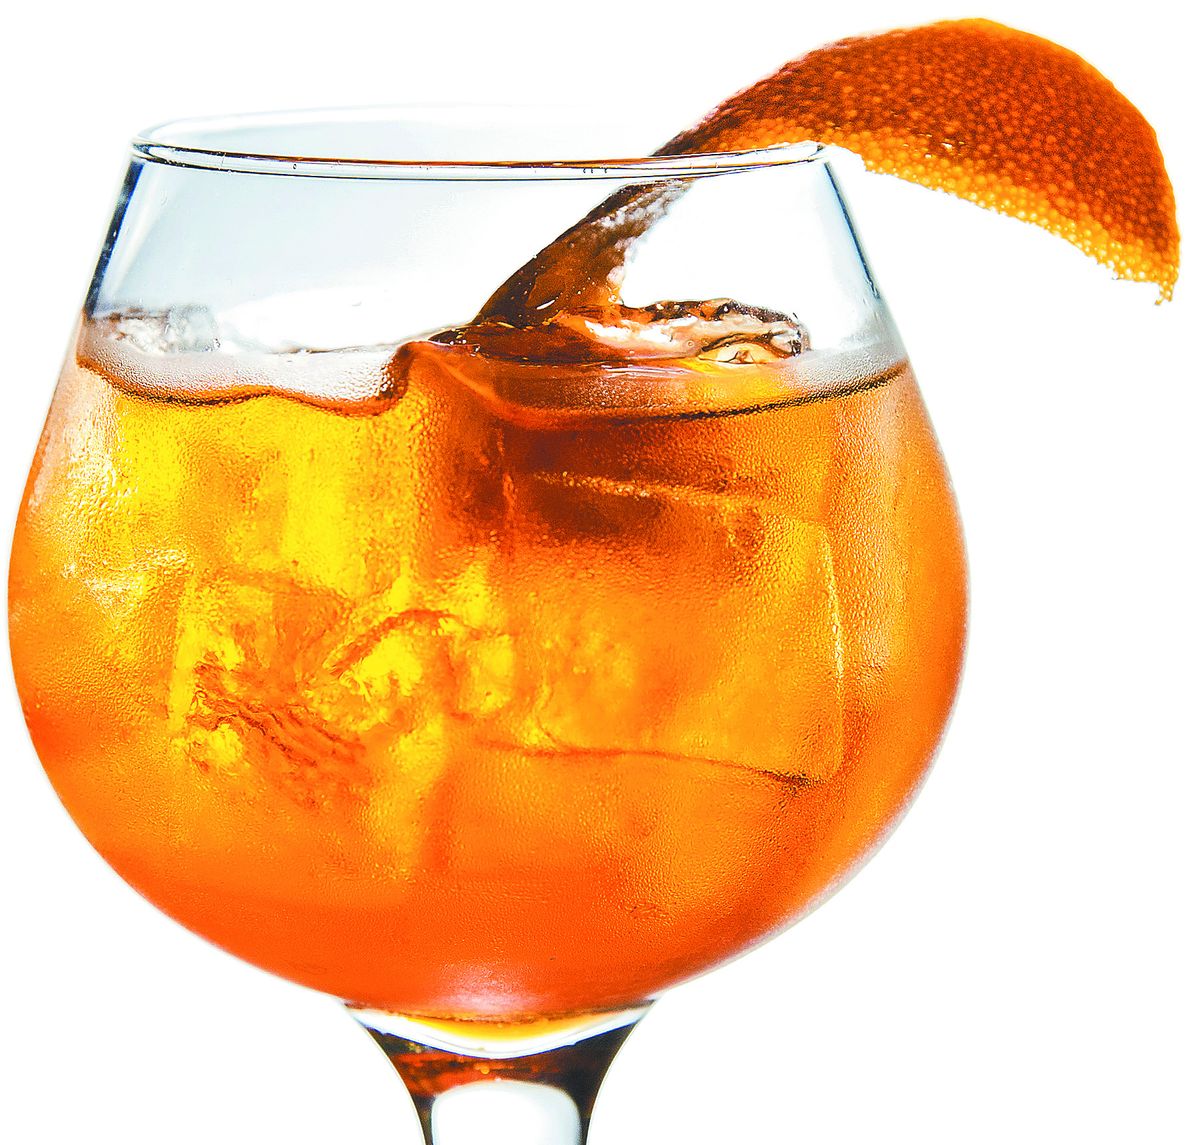 A barrel-aged cocktail at Italia Trattoria. (Colin Mulvany)